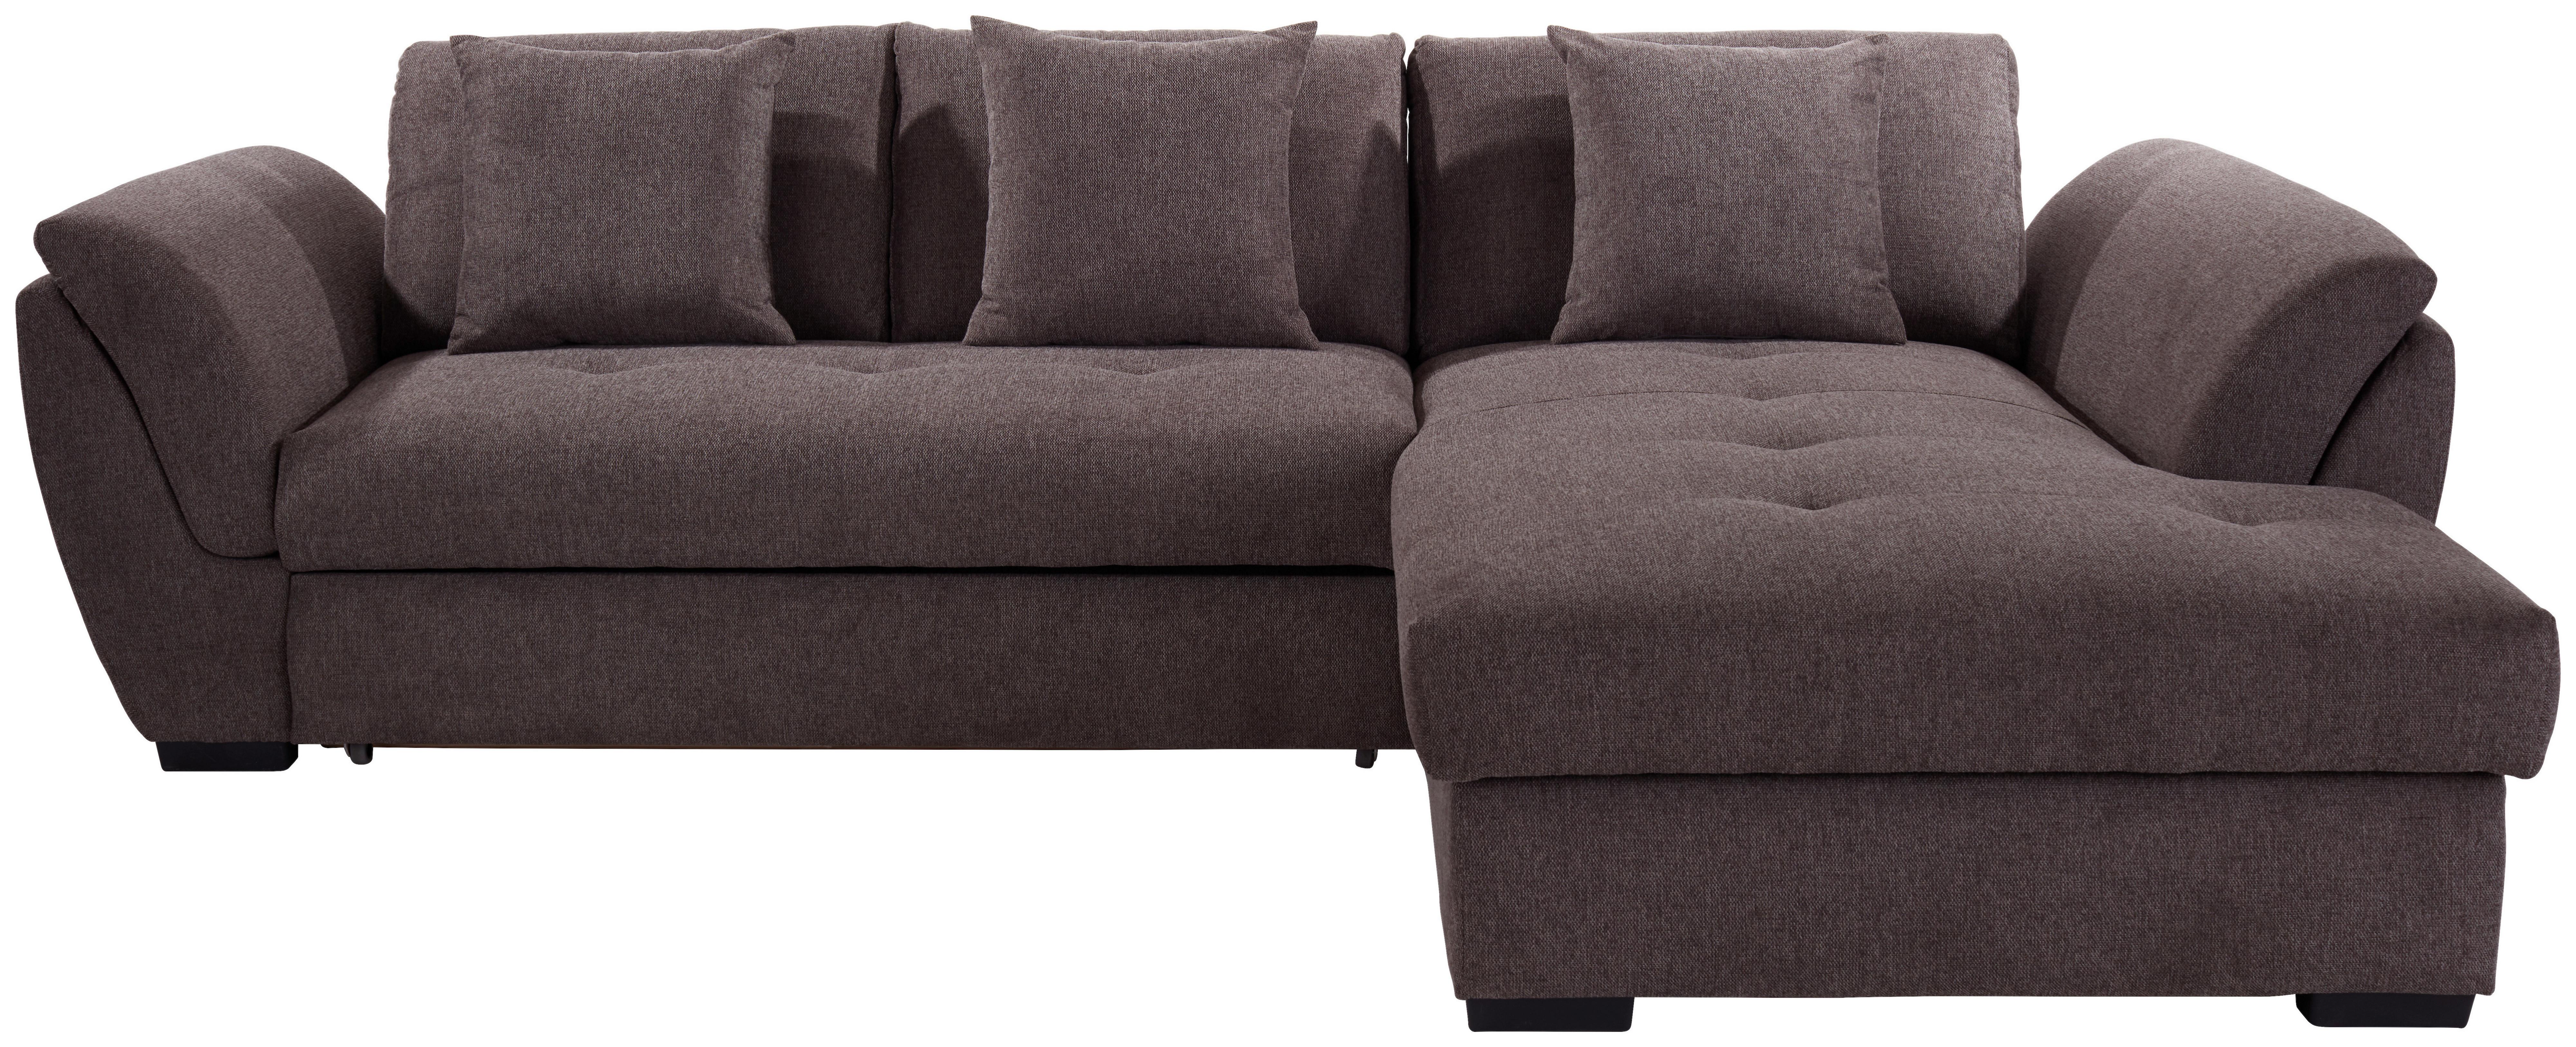 Sedežna Garnitura Berisso, Z Ležiščem In Predalom - rjava, Design, umetna masa (278/187cm) - Modern Living